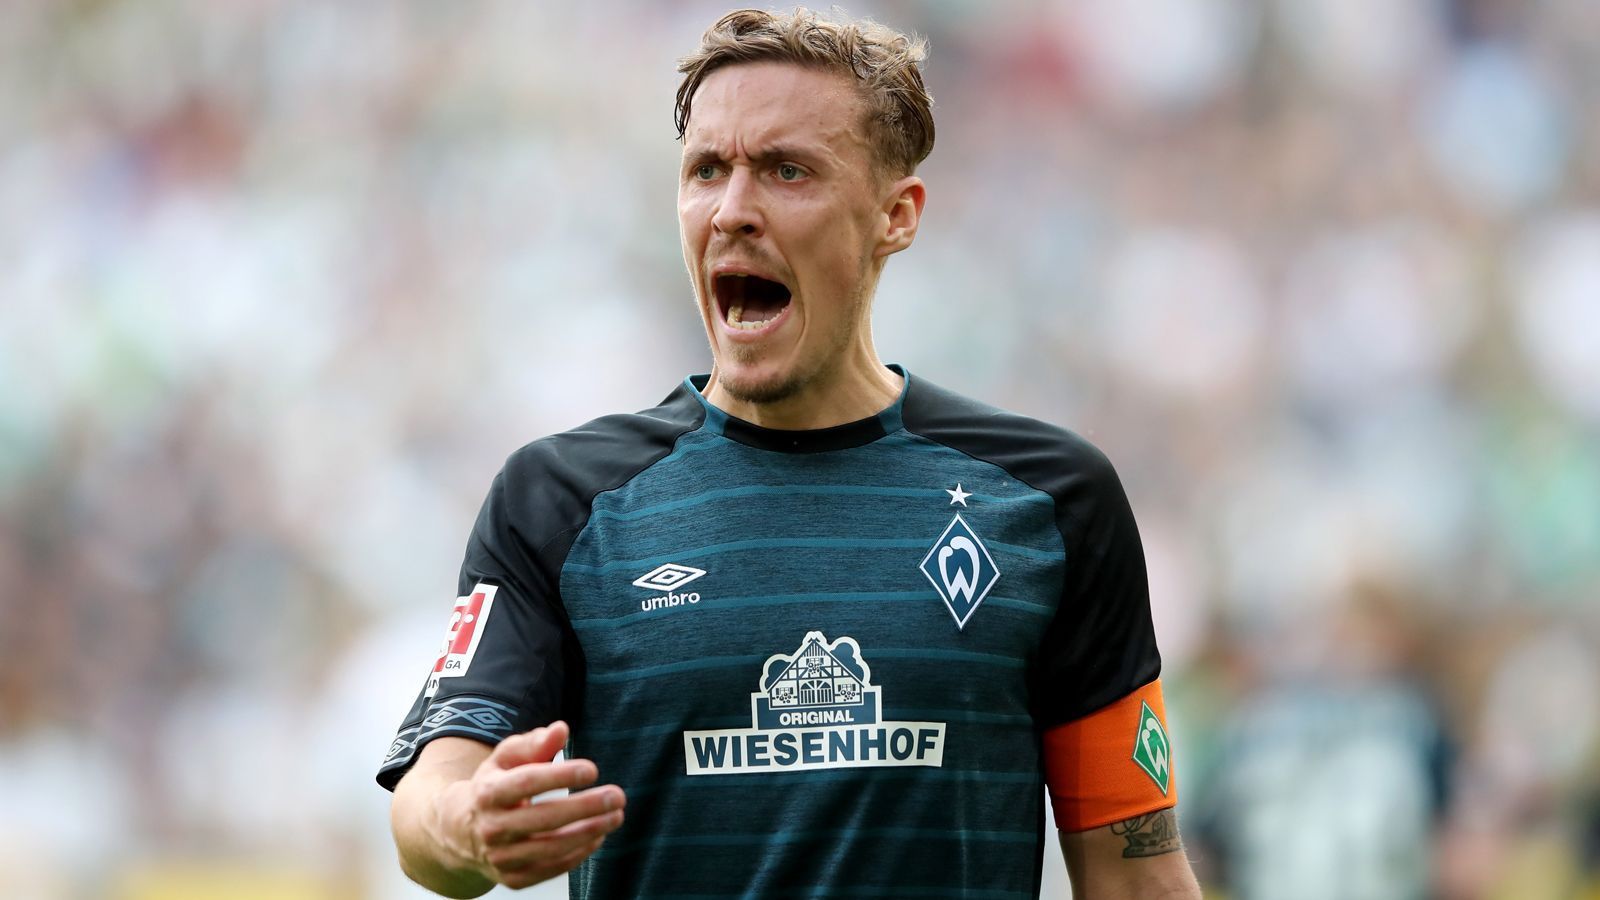 
                <strong>Platz 5 - Max Kruse (SV Werder Bremen)</strong><br>
                Volley-Tore in der Saison 2018/19: 2Saisontore insgesamt: 11Saisoneinsätze: 32
              